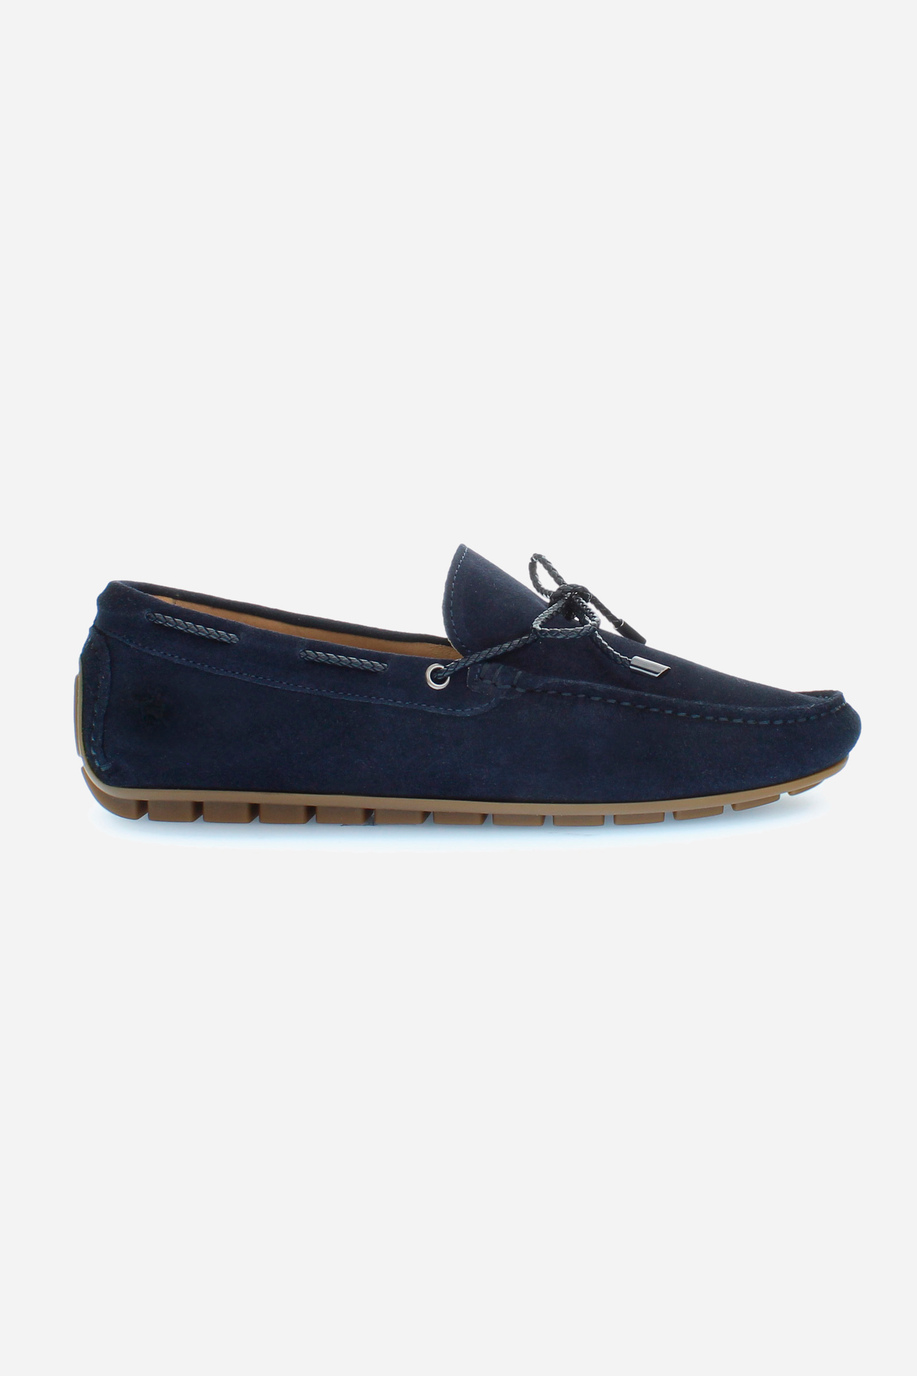 Men's suede loafers with laces - Man shoes | La Martina - Official Online Shop